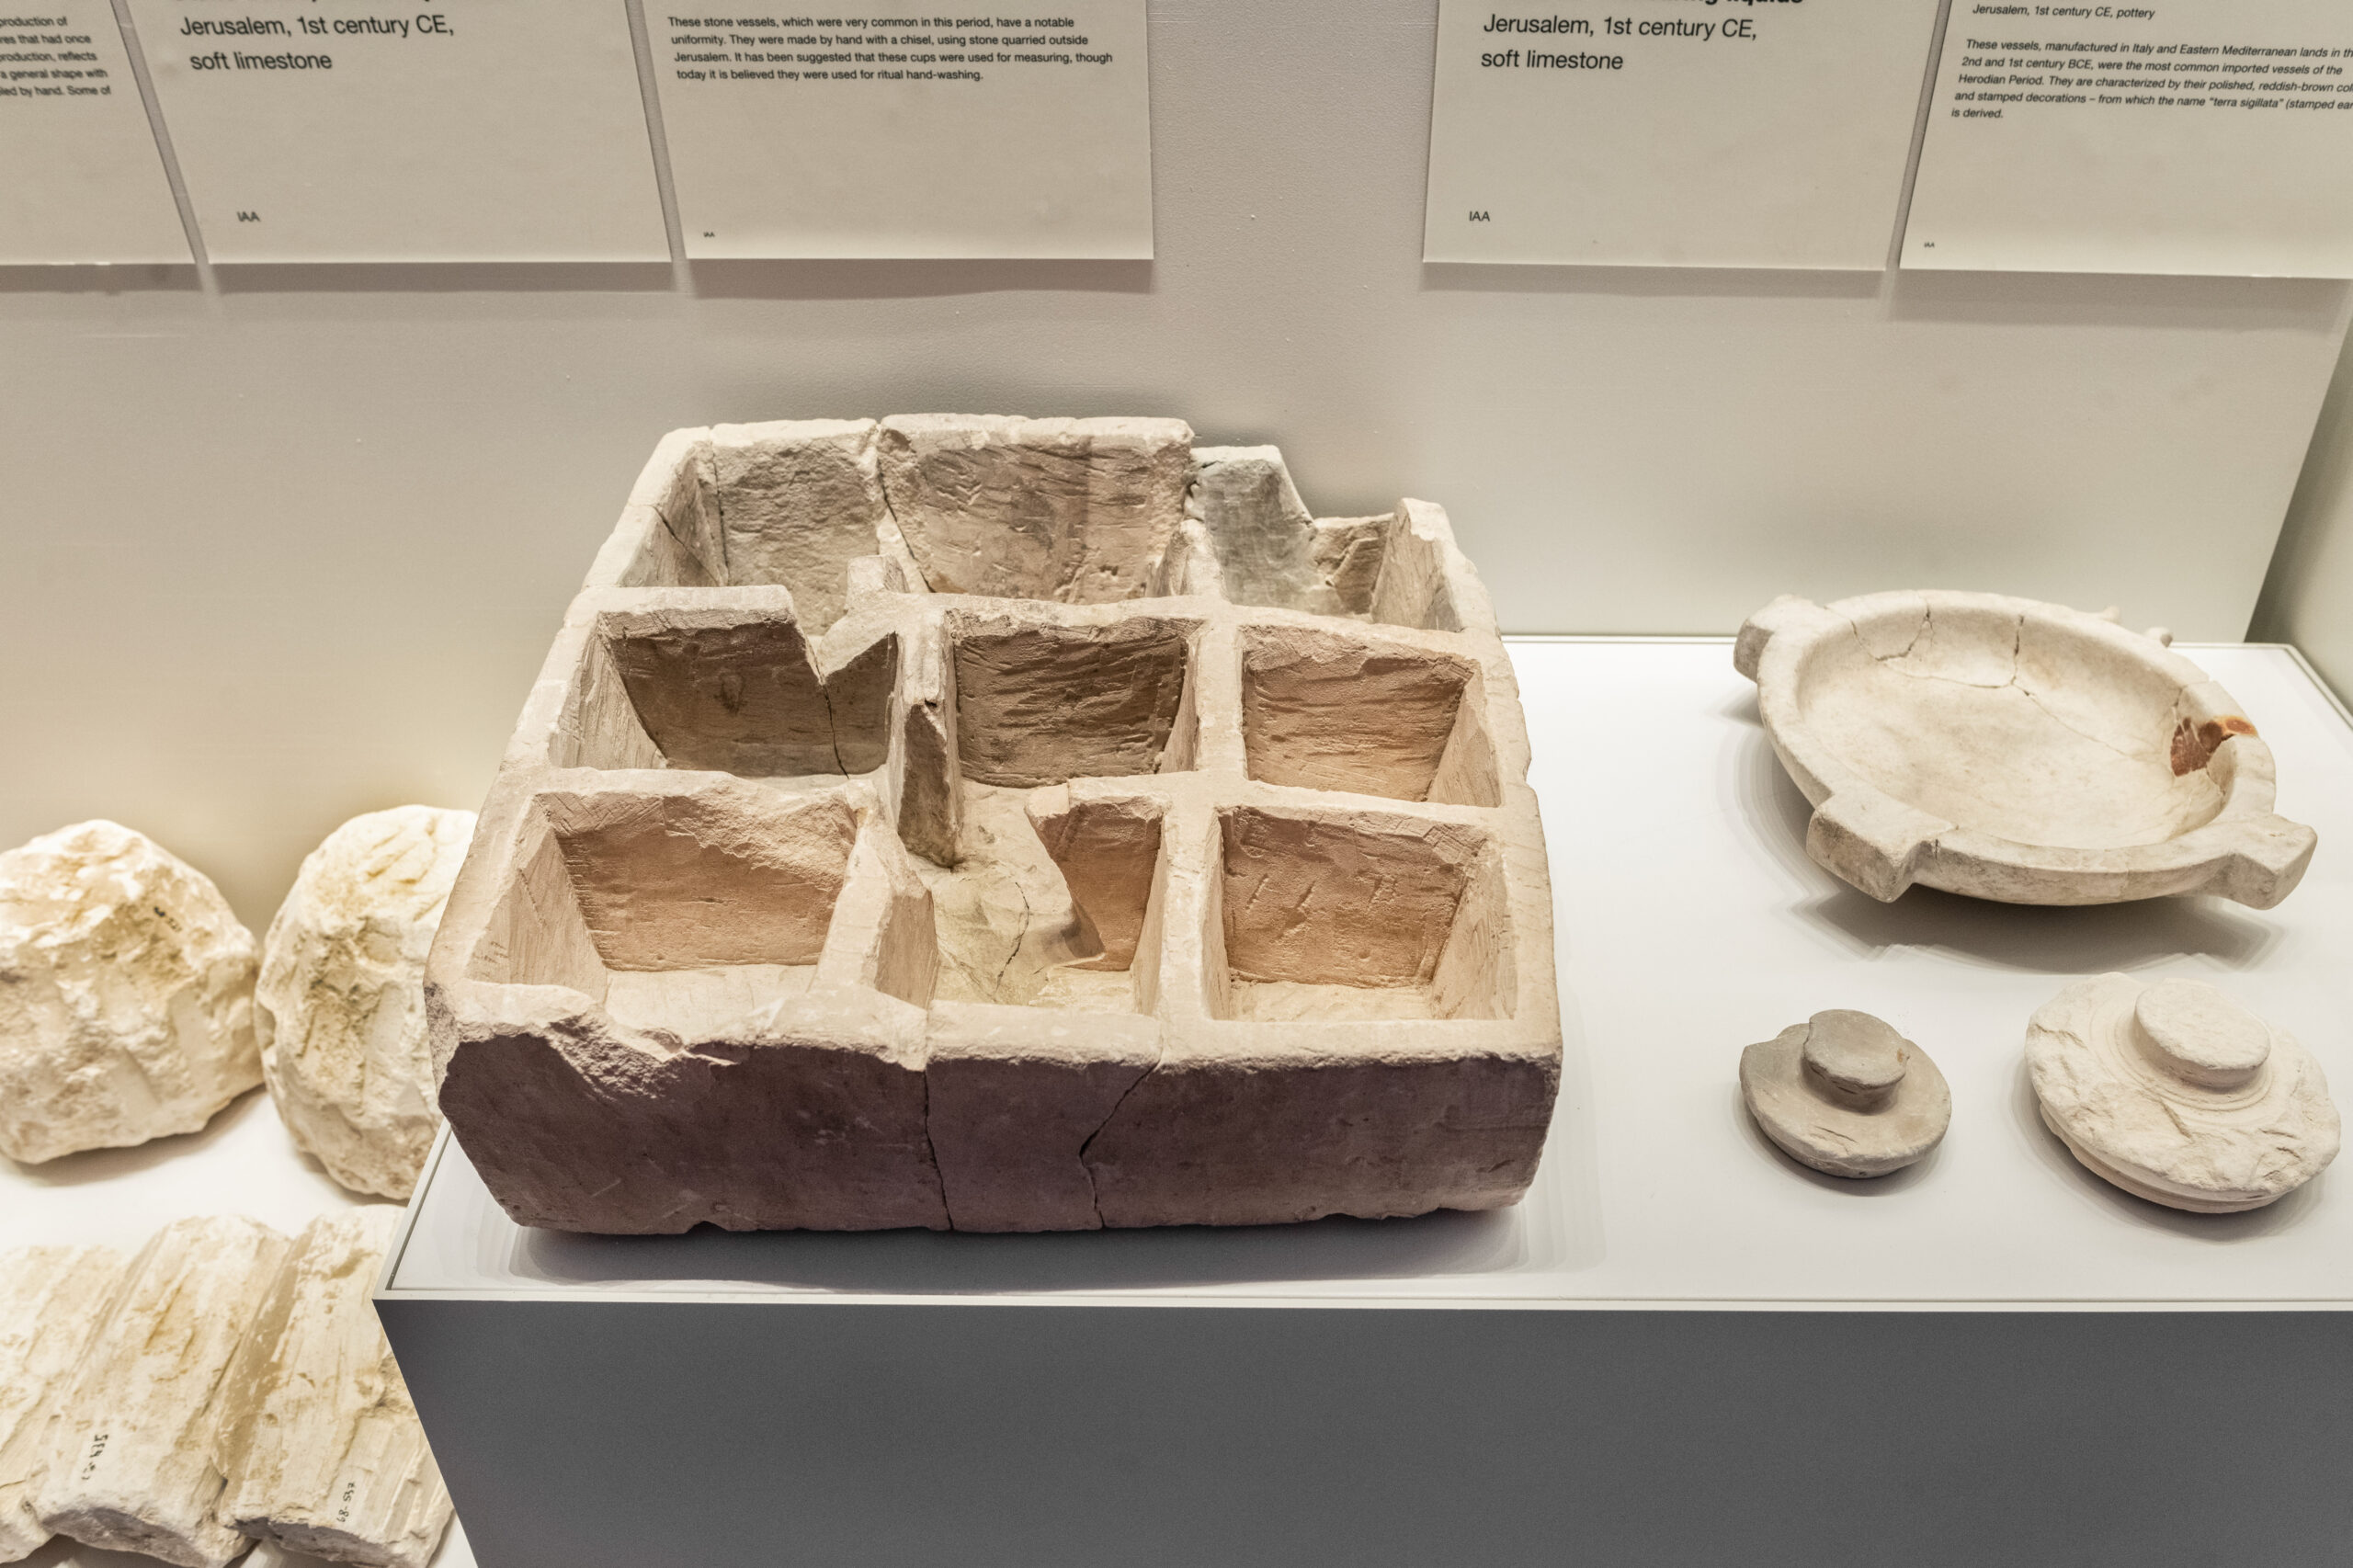 2. התיבה שהתגלתה בחפירות רשות העתיקות בעיר דוד. צילום מוזיאון ישראל